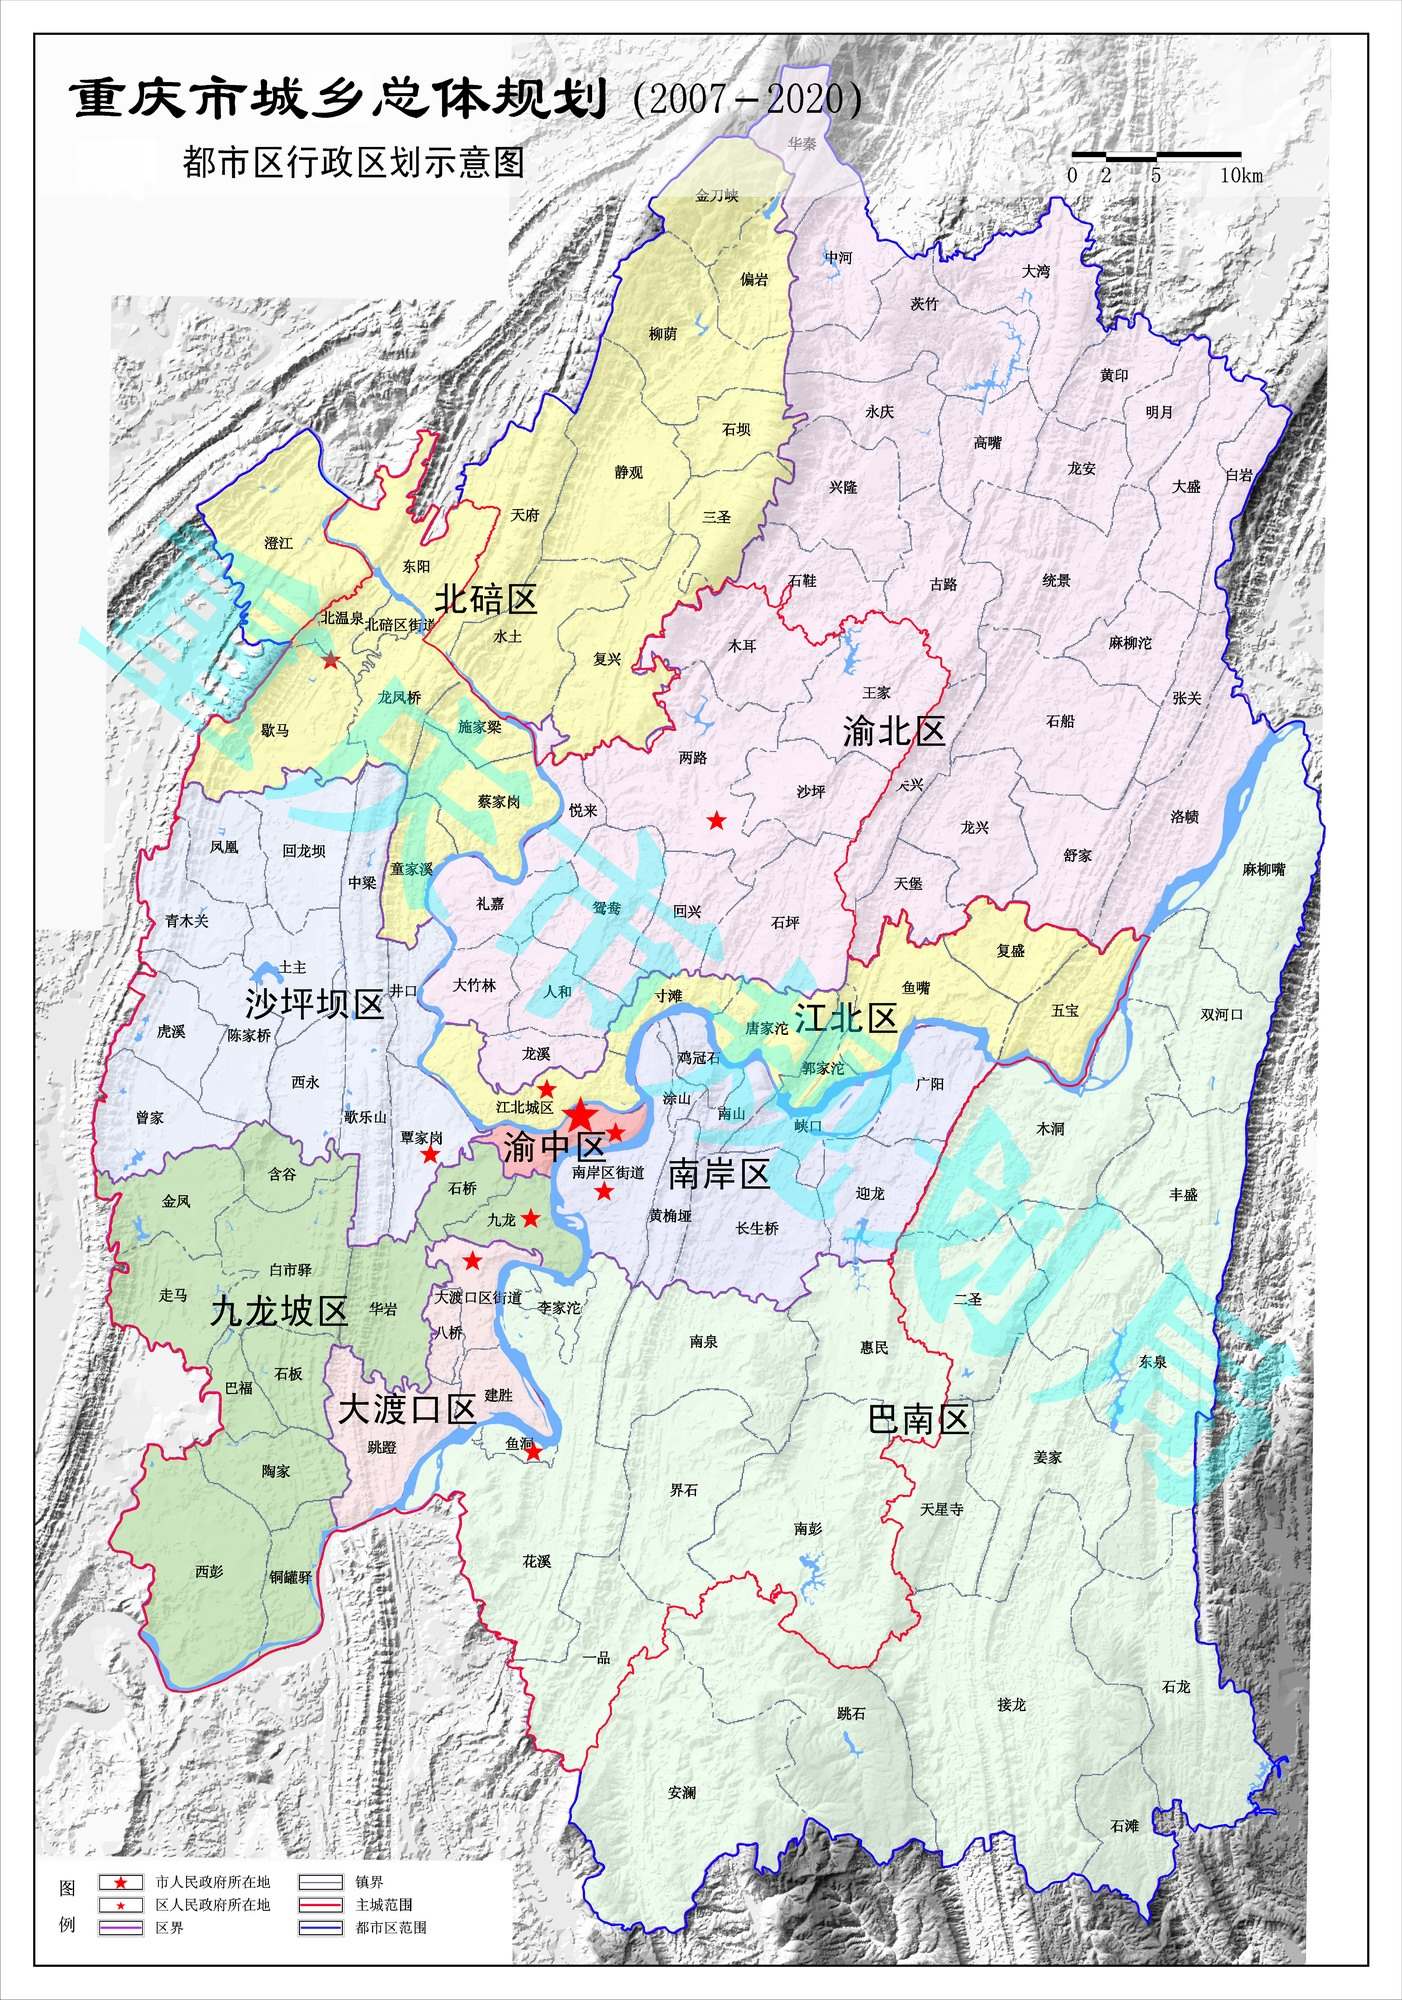 两江新区的实际管辖范围(根据12月1日,12月3日的最新变化)